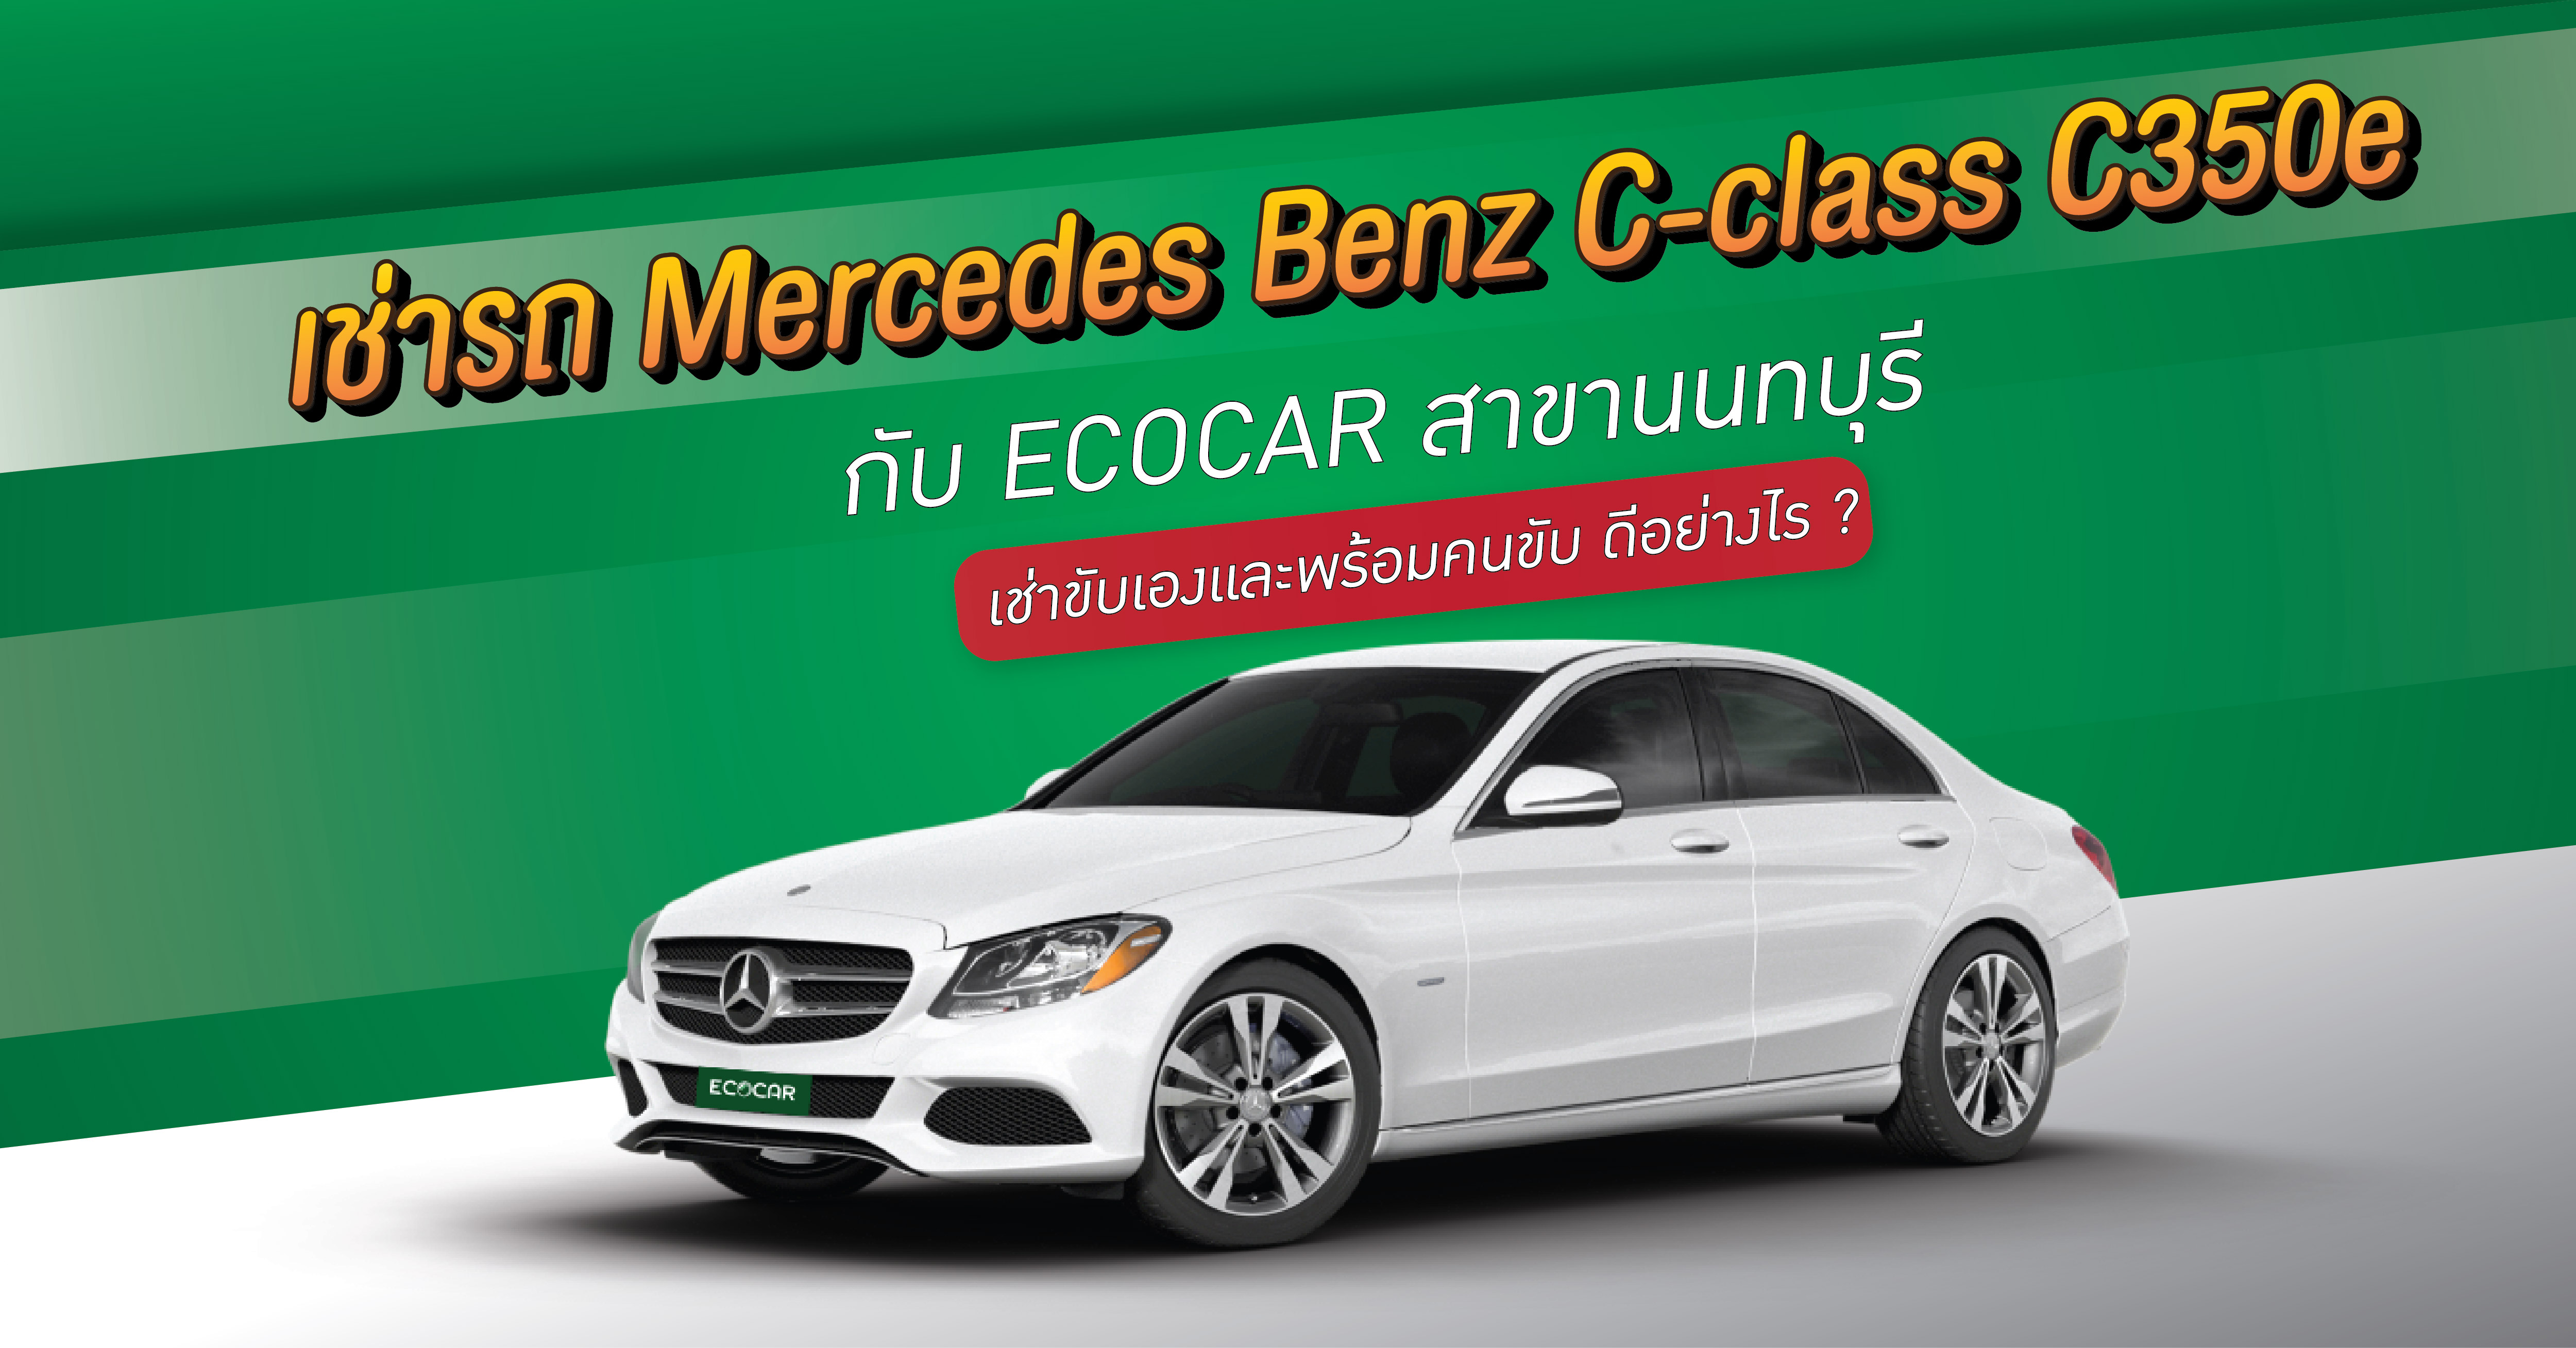 เช่ารถ Mercedes Benz C-class C350e กับ [ ECOCAR สาขานนทบุรี ] เช่าขับเองและพร้อมคนขับ ดีอย่างไร ?